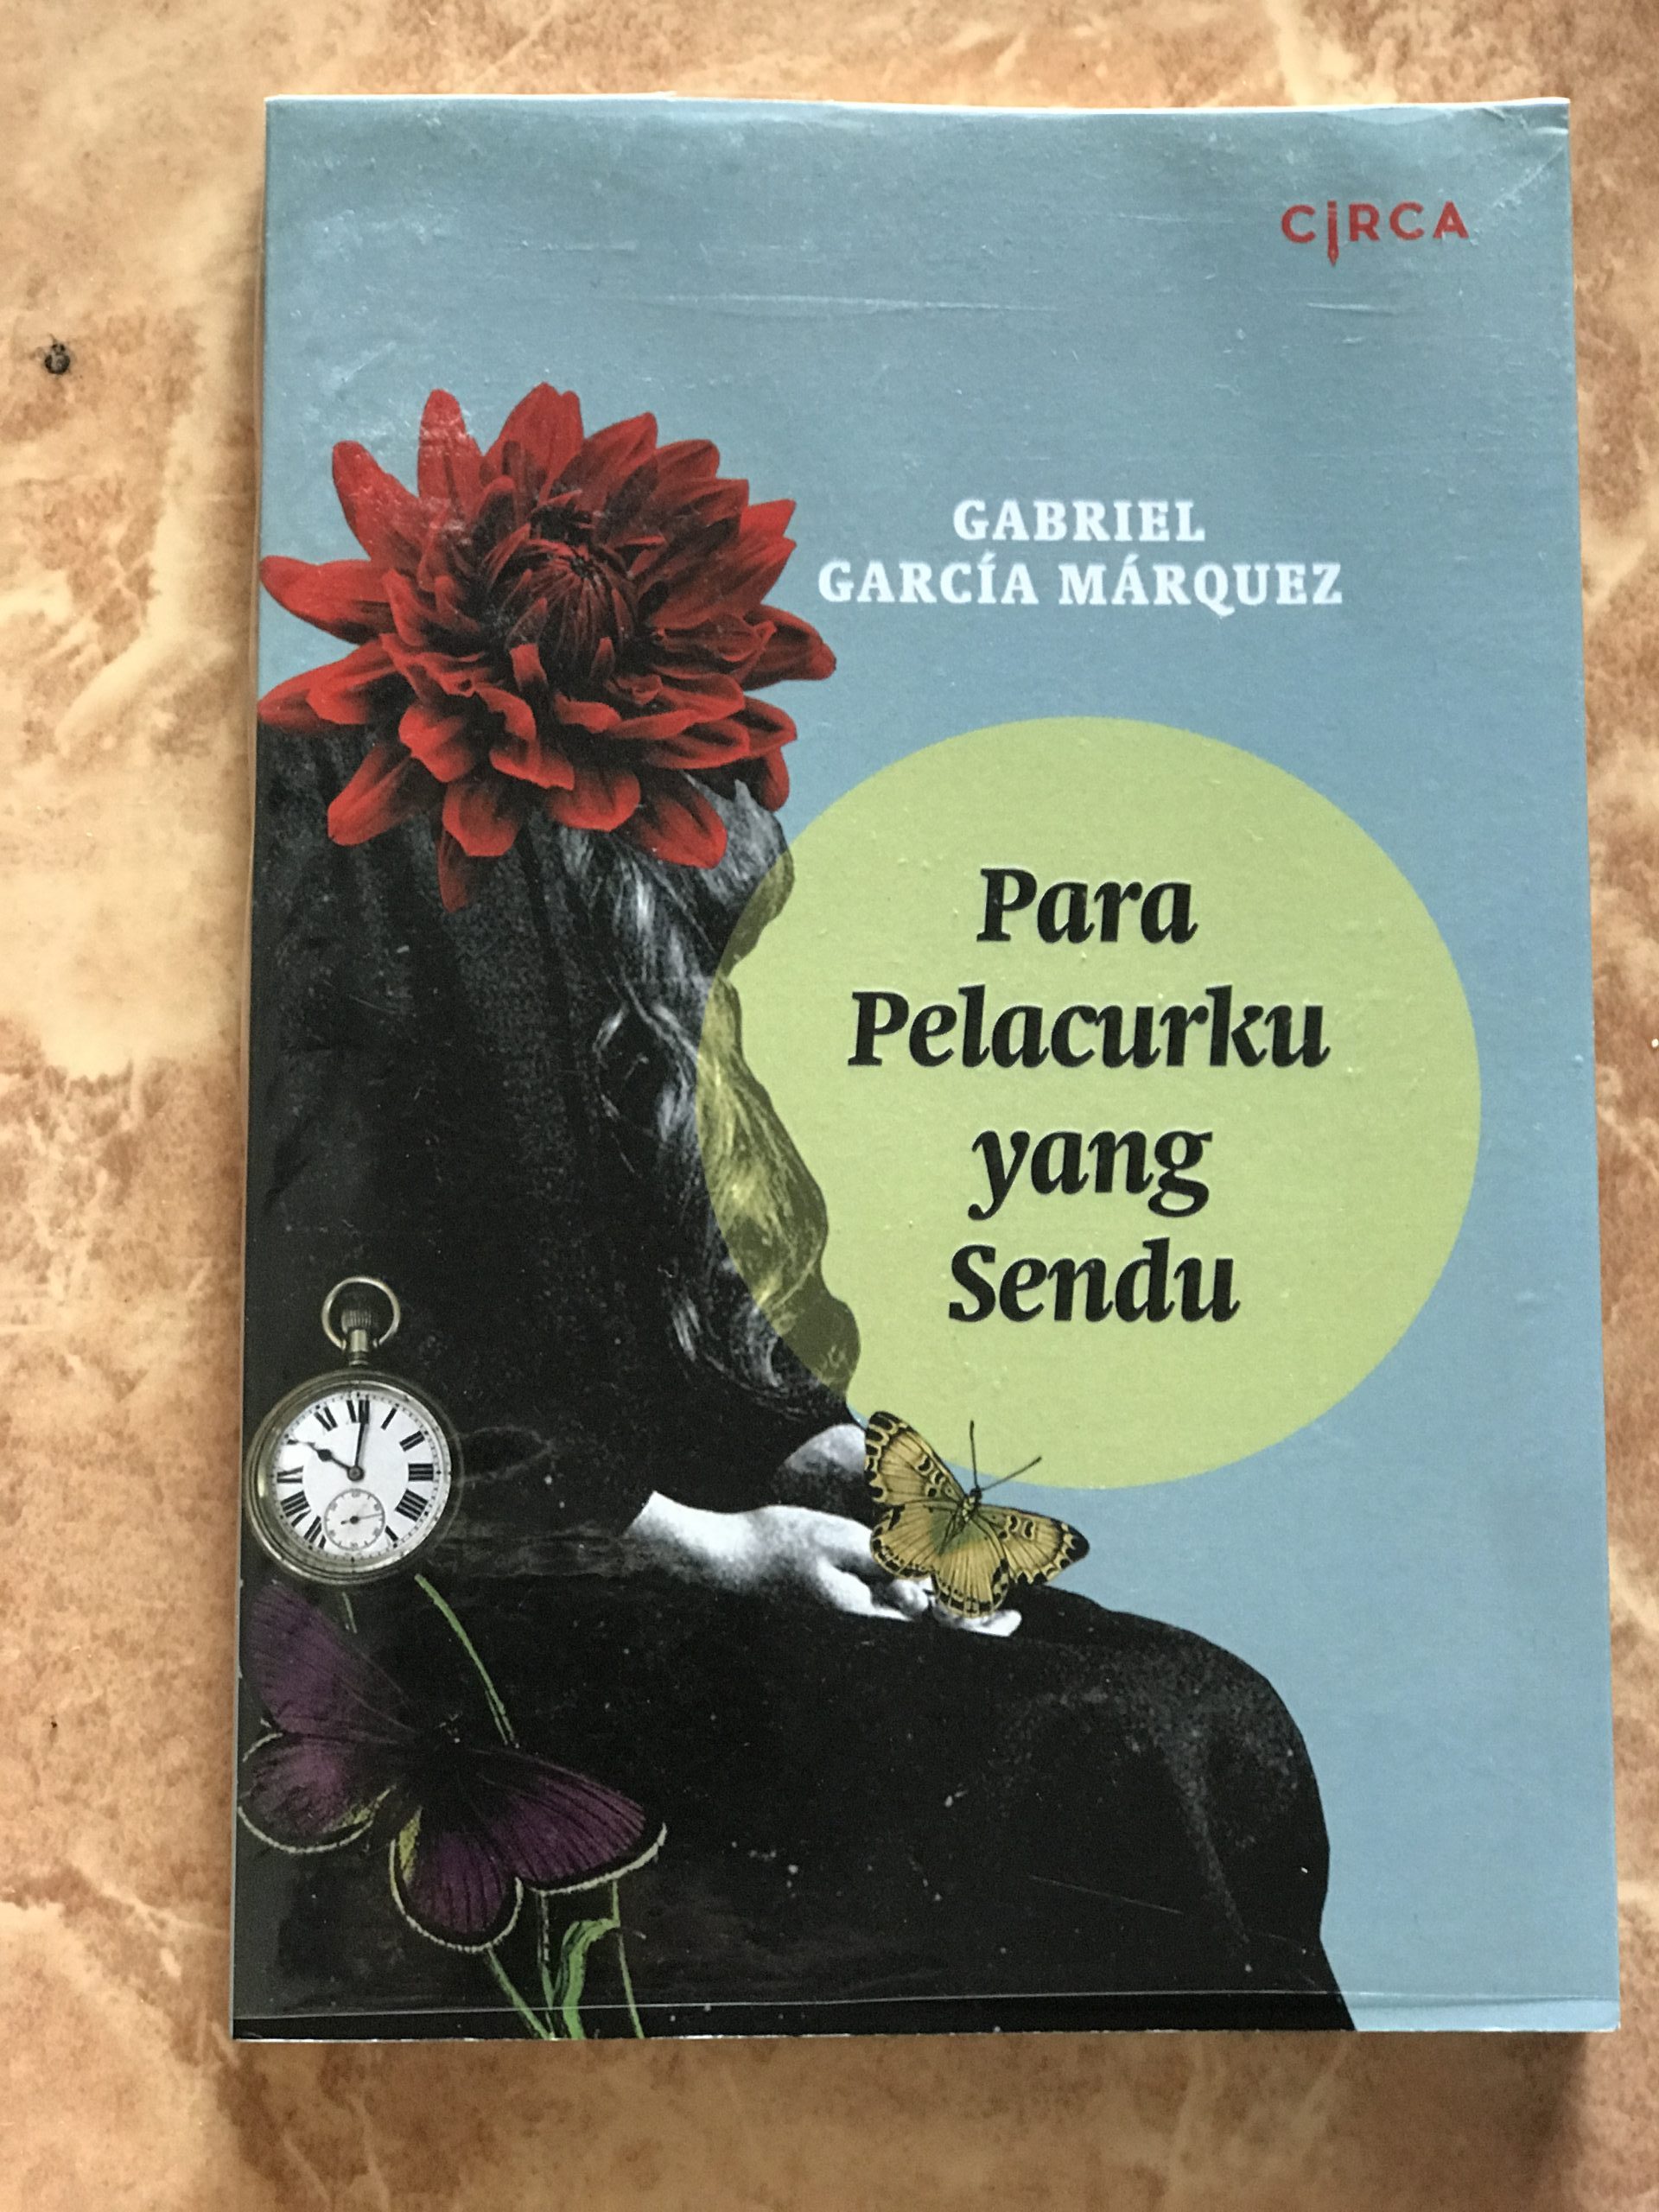 Cara Gabriel Garcia Marquez Mengungkapkan Urusan Seks dengan Sopan